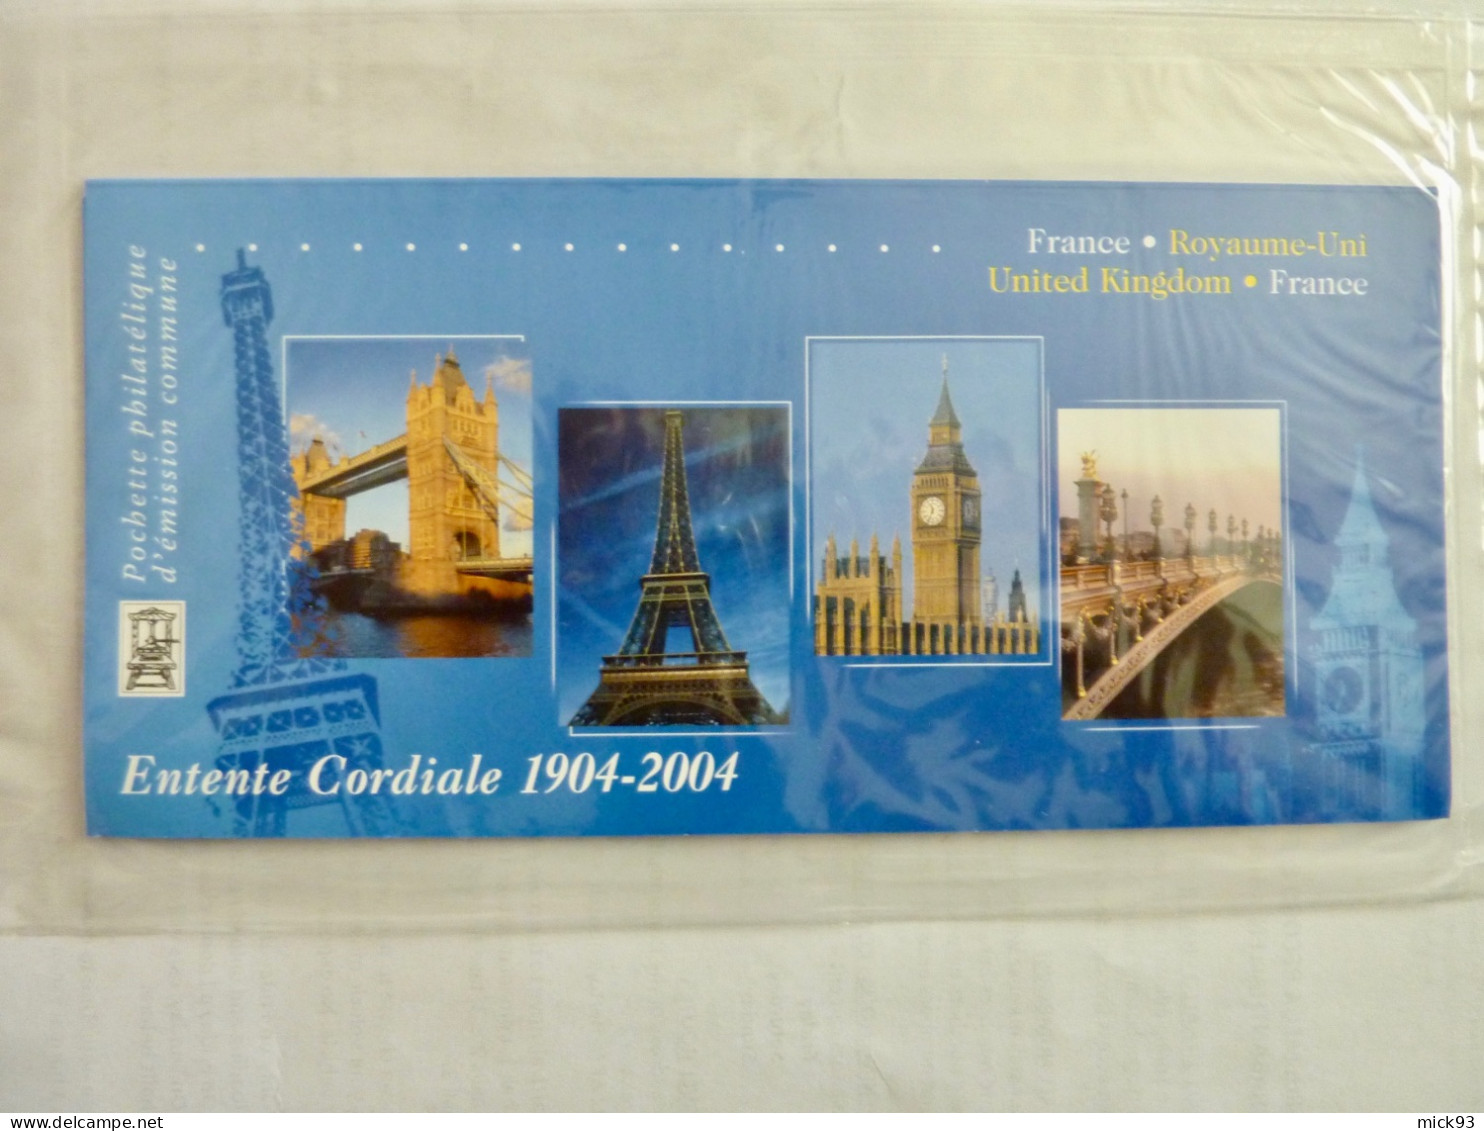 France Bloc émissions Communes France-Royaume Uni 2004 - Blocs Souvenir